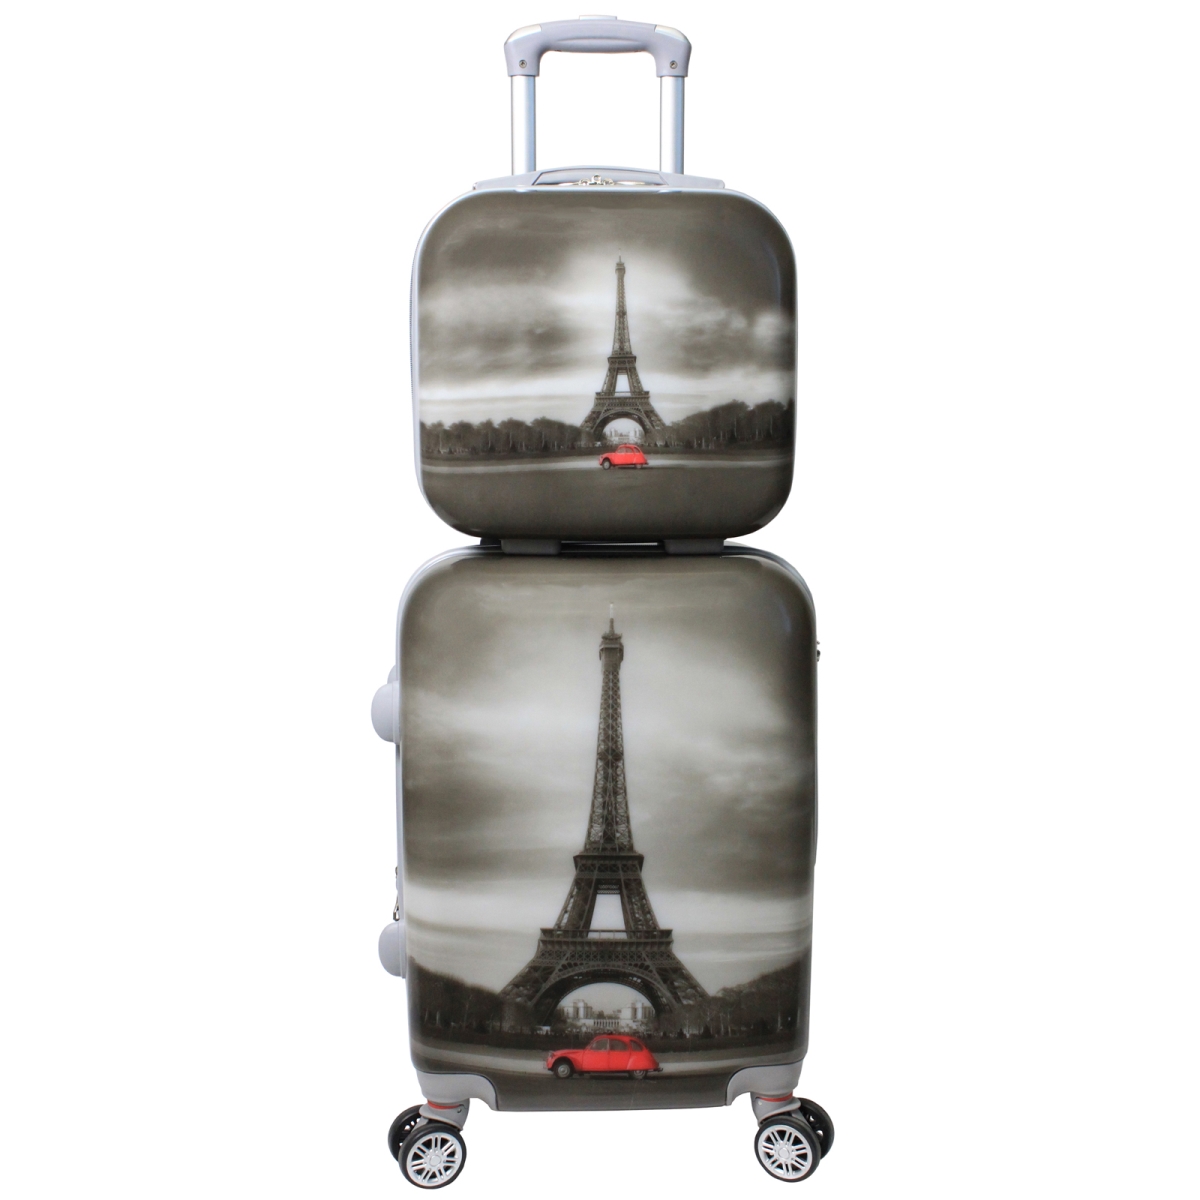 24dm6011 Destination Collection 2-piece Luggage Set, Paris